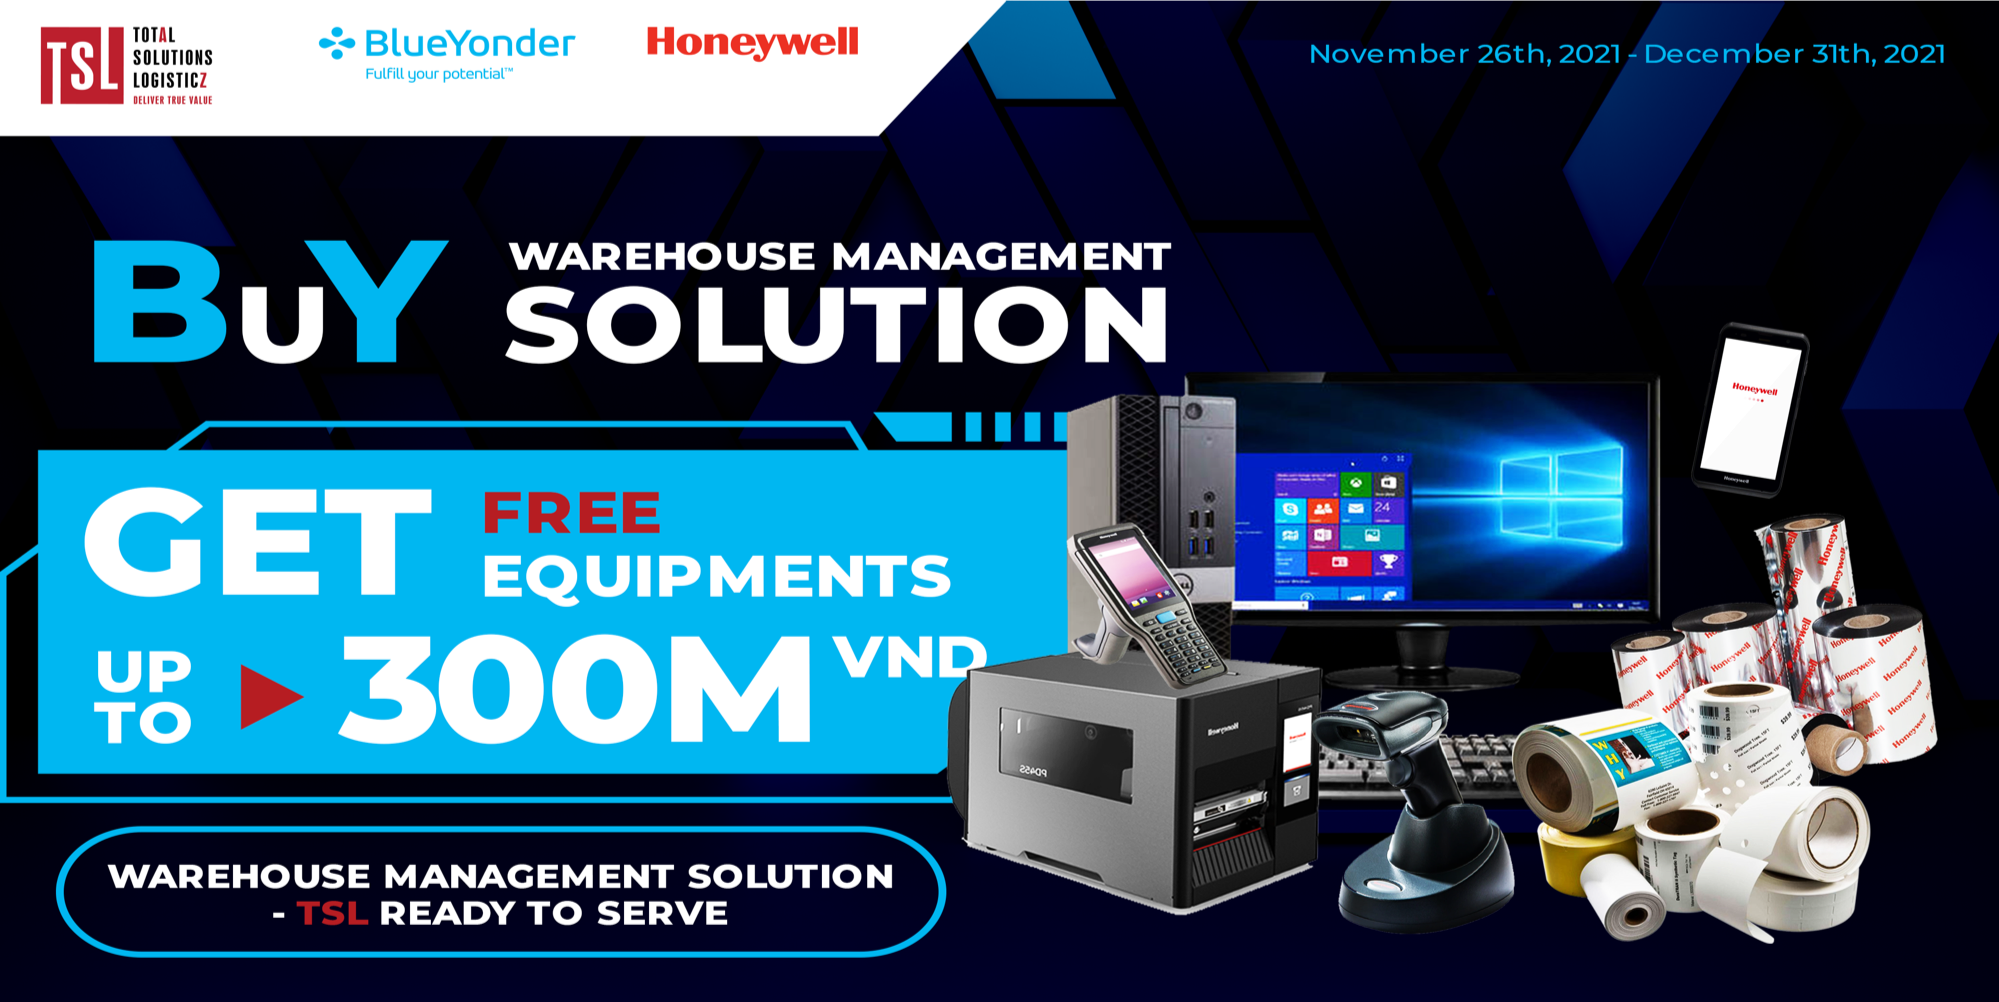 QUẢN LÝ KHO – CÓ TSL LO: Miễn phí trọn bộ thiết bị barcode Honeywell và PCs của Dell lên đến 300 triệu